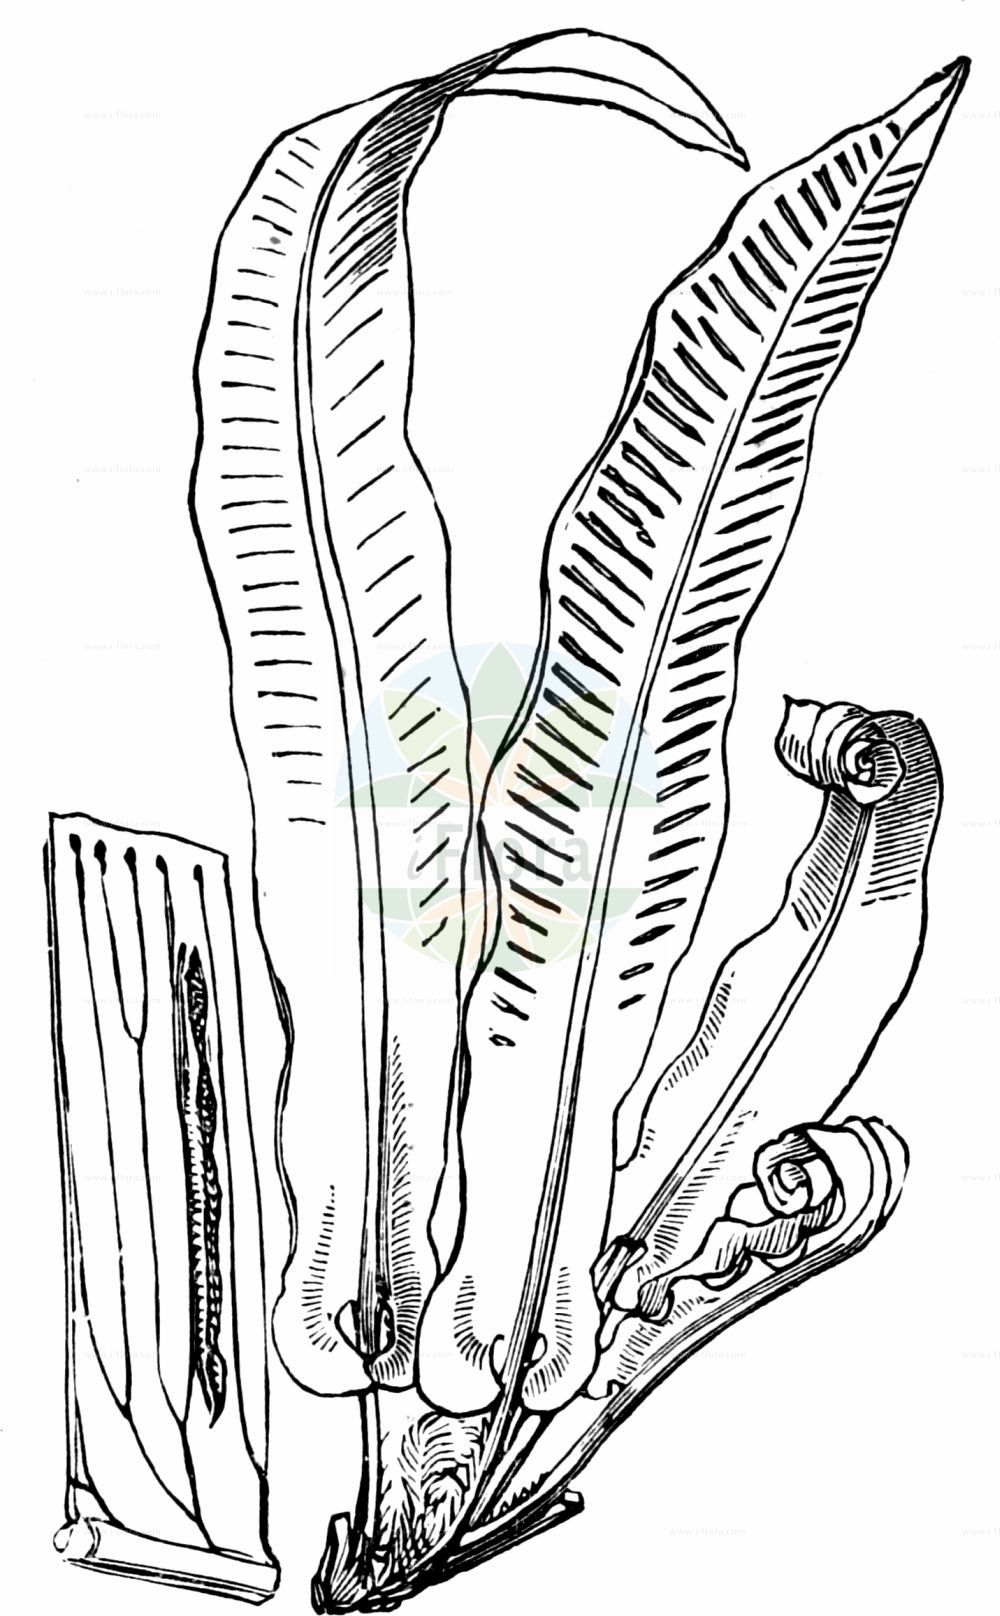 Historische Abbildung von Asplenium scolopendrium (Hirschzunge - Hart's-tongue). Das Bild zeigt Blatt, Bluete, Frucht und Same. ---- Historical Drawing of Asplenium scolopendrium (Hirschzunge - Hart's-tongue). The image is showing leaf, flower, fruit and seed.(Asplenium scolopendrium,Hirschzunge,Hart's-tongue,Asplenium scolopendrium,Biropteris antrijovis,Phyllitis antrijovis,Phyllitis scolopendrium,Scolopendrium officinale,Scolopendrium vulgare,Hirschzunge,Hart's-tongue,Common Hart's Tongue,Hart's Tongue Fern,Asplenium,Streifenfarn,Spleenwort,Aspleniaceae,Streifenfarngewächse,Spleenworts,Blatt,Bluete,Frucht,Same,leaf,flower,fruit,seed,Fitch et al. (1880))